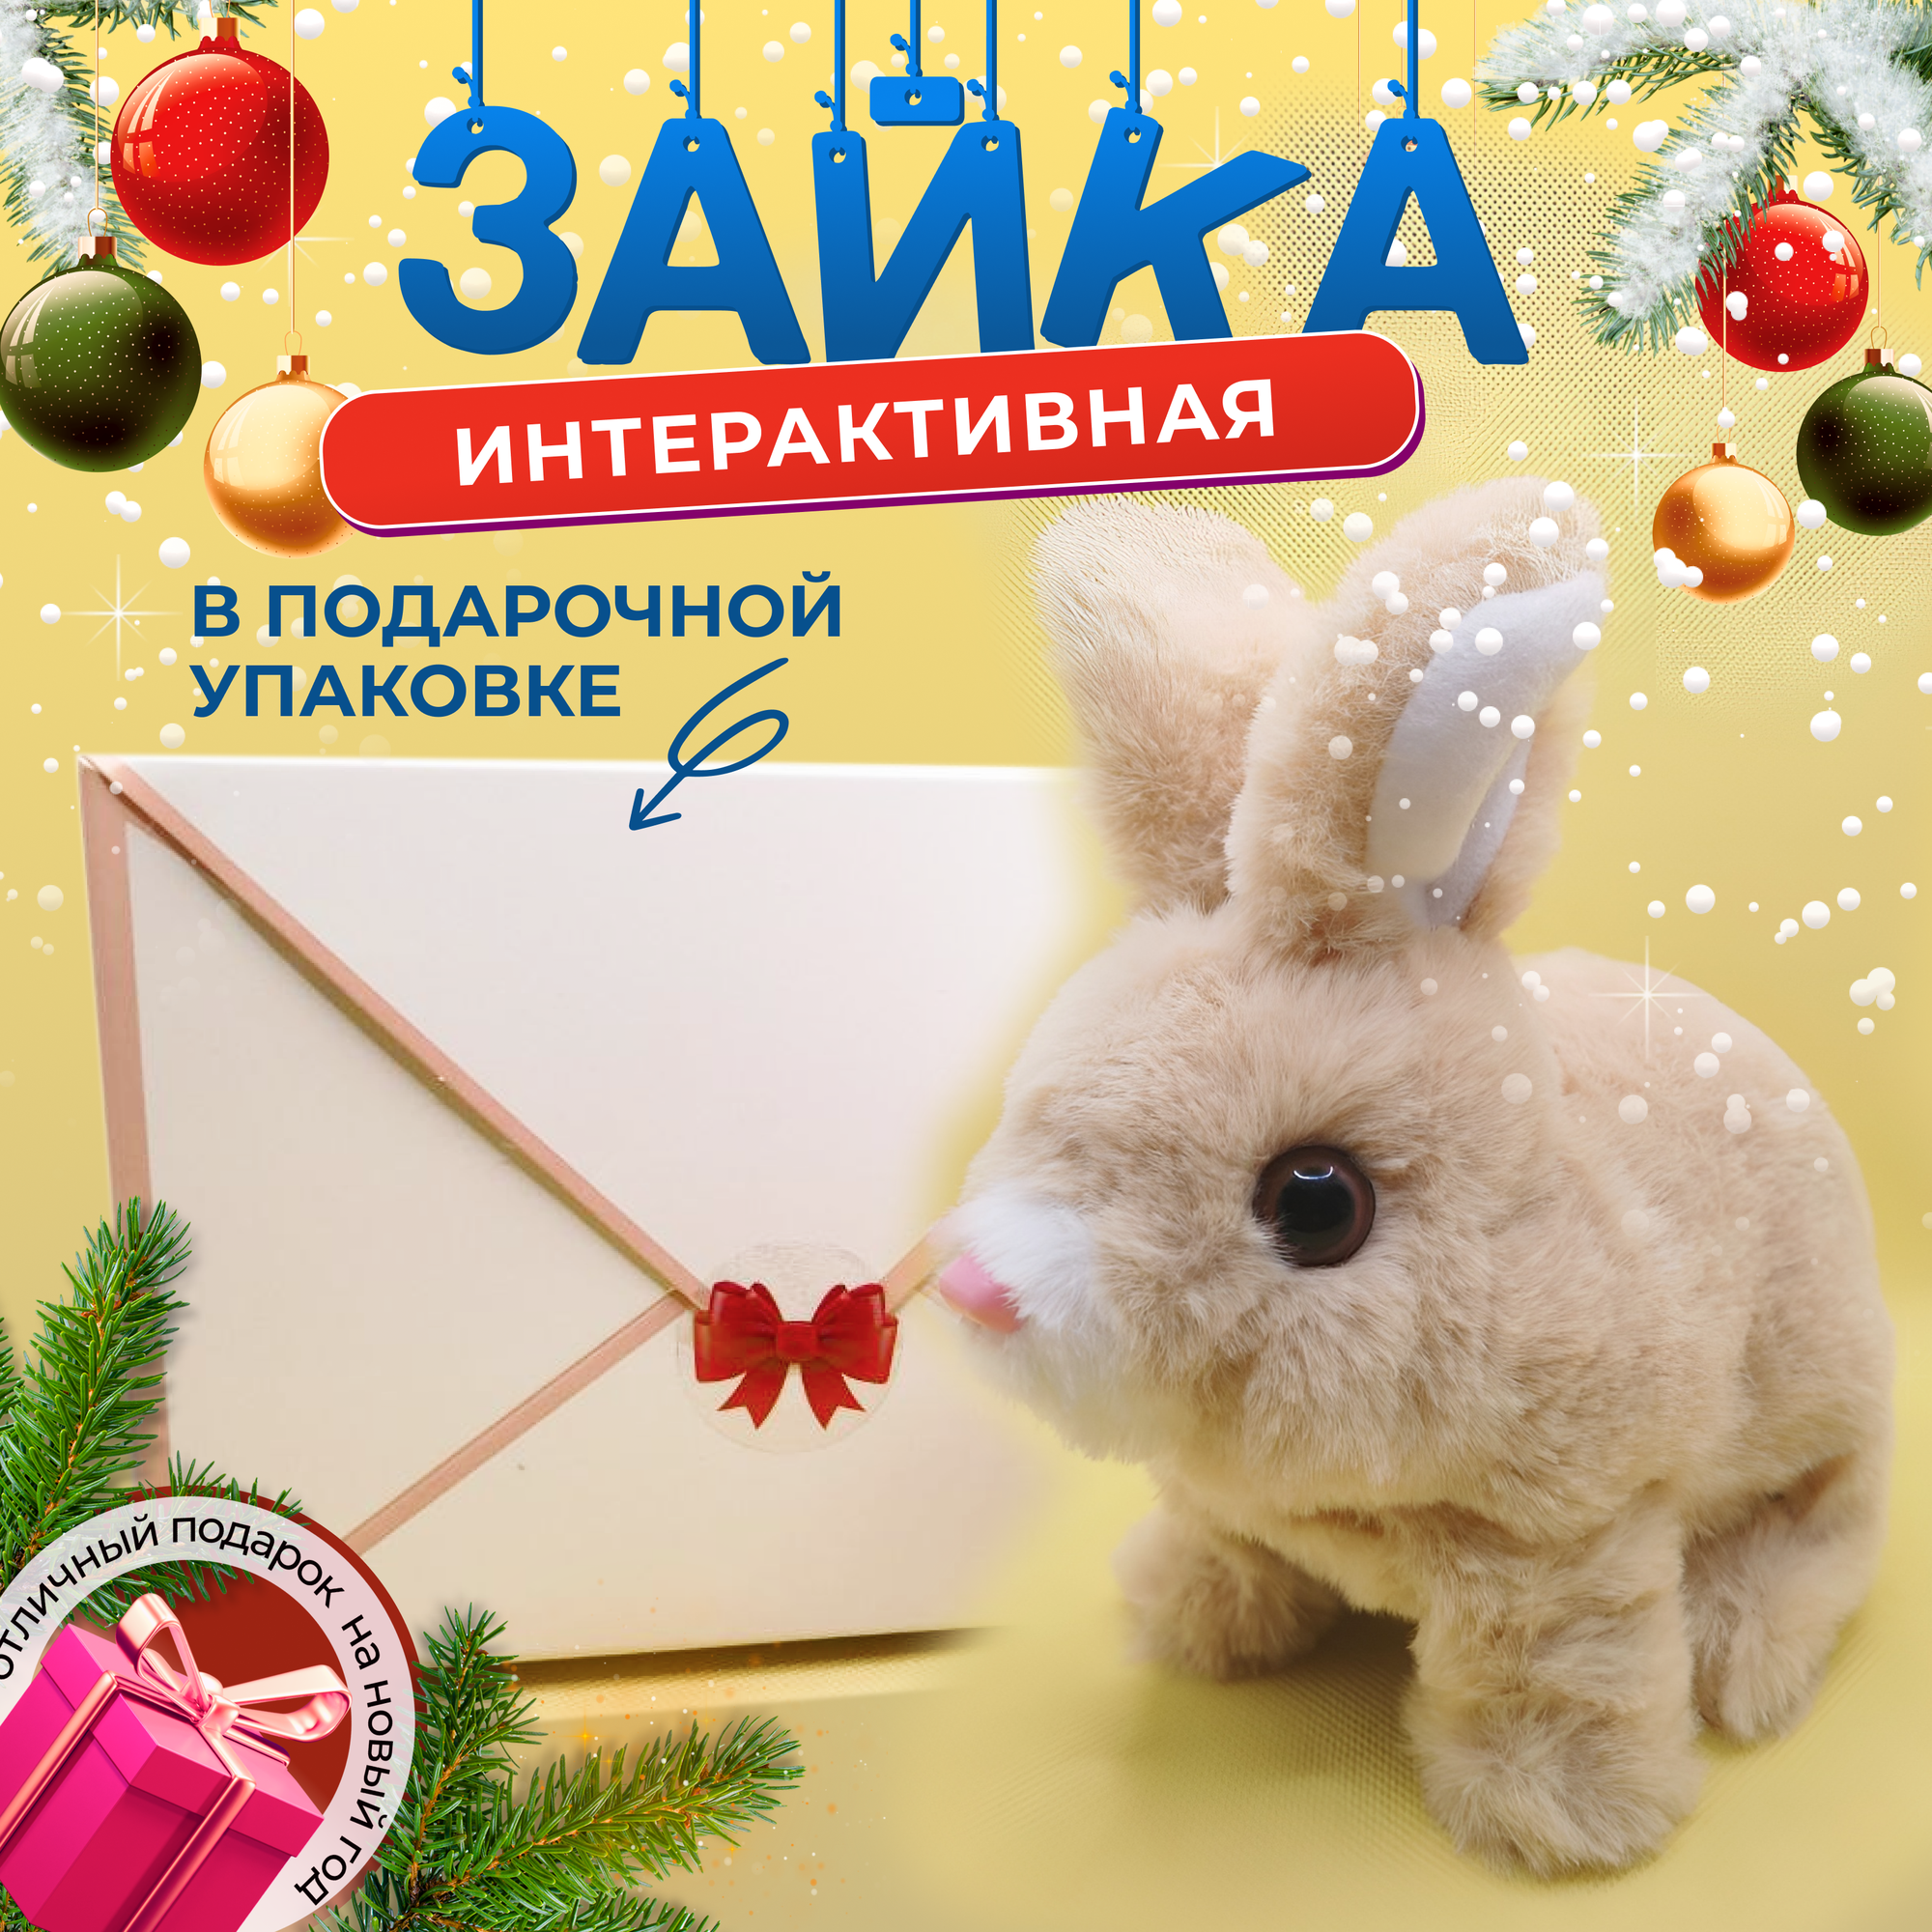 Интерактивная игрушка Зайчик коричневый, прыгающий кролик, детская мягкая игрушка на новый год, подарки на новый год 2024, в подарочной упаковке